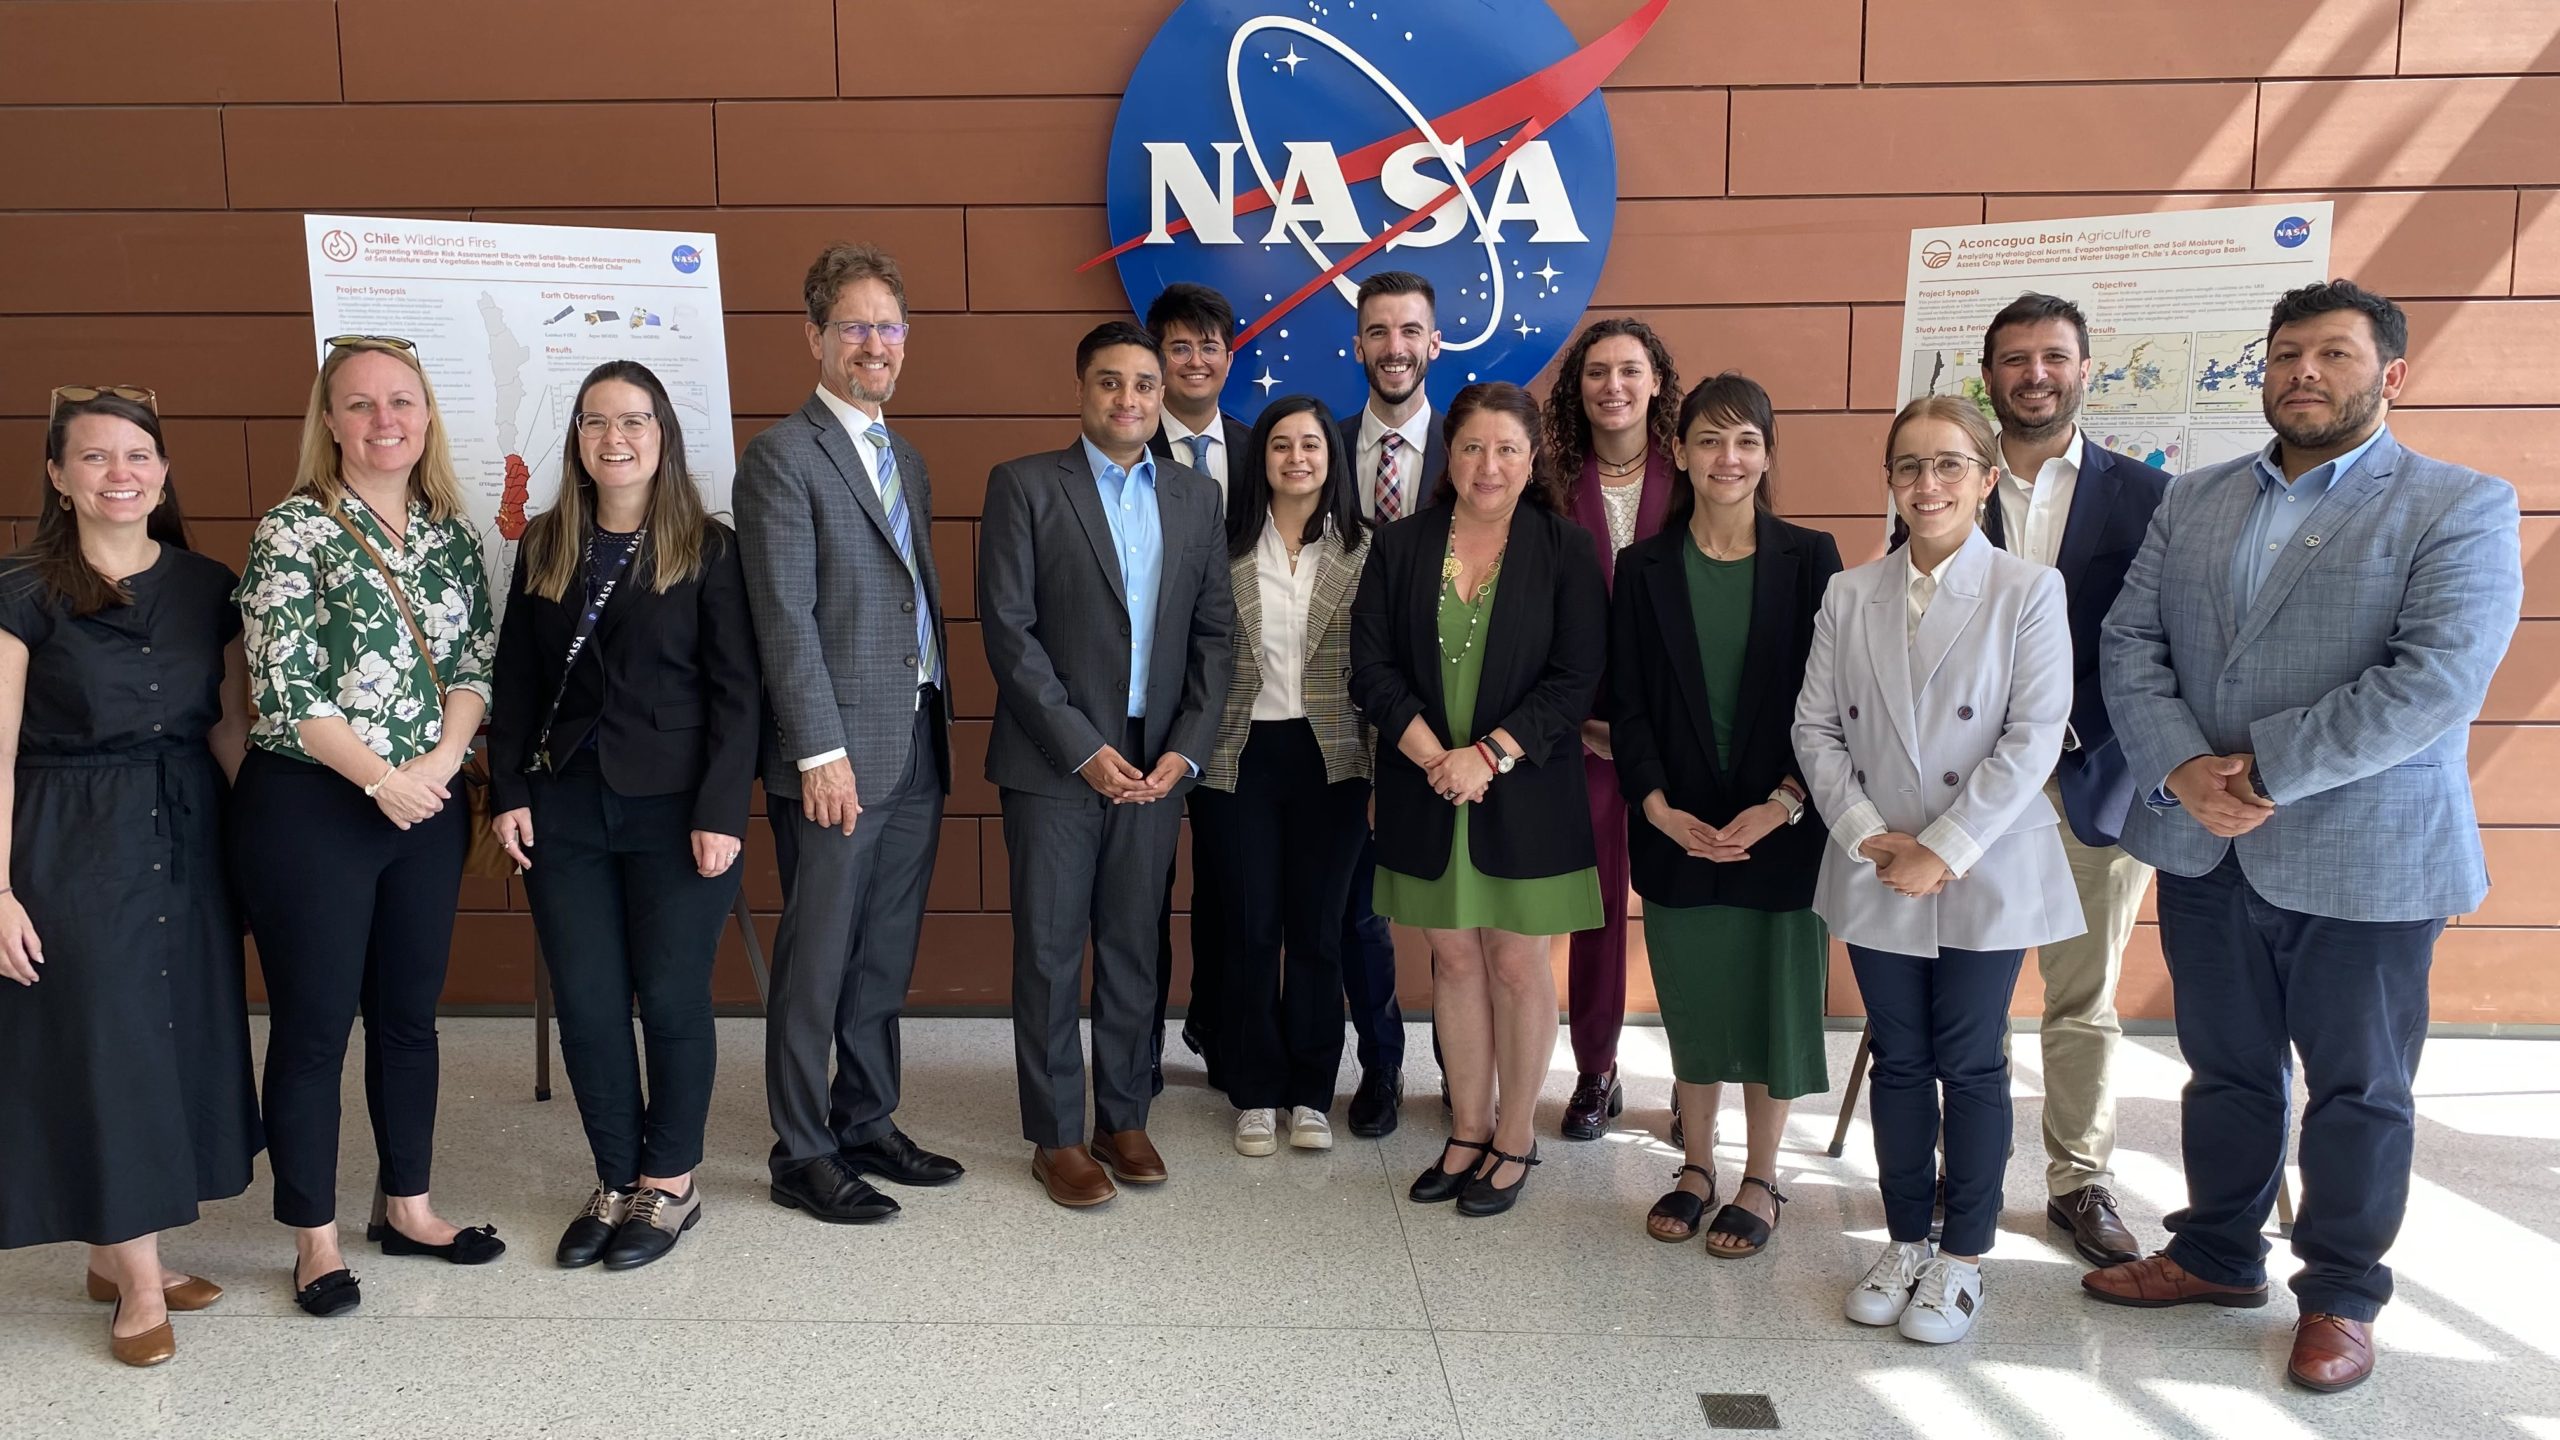 Visita de la Oficina Agrícola y Directora Nacional de CIREN al Centro de NASA Langley Research Center